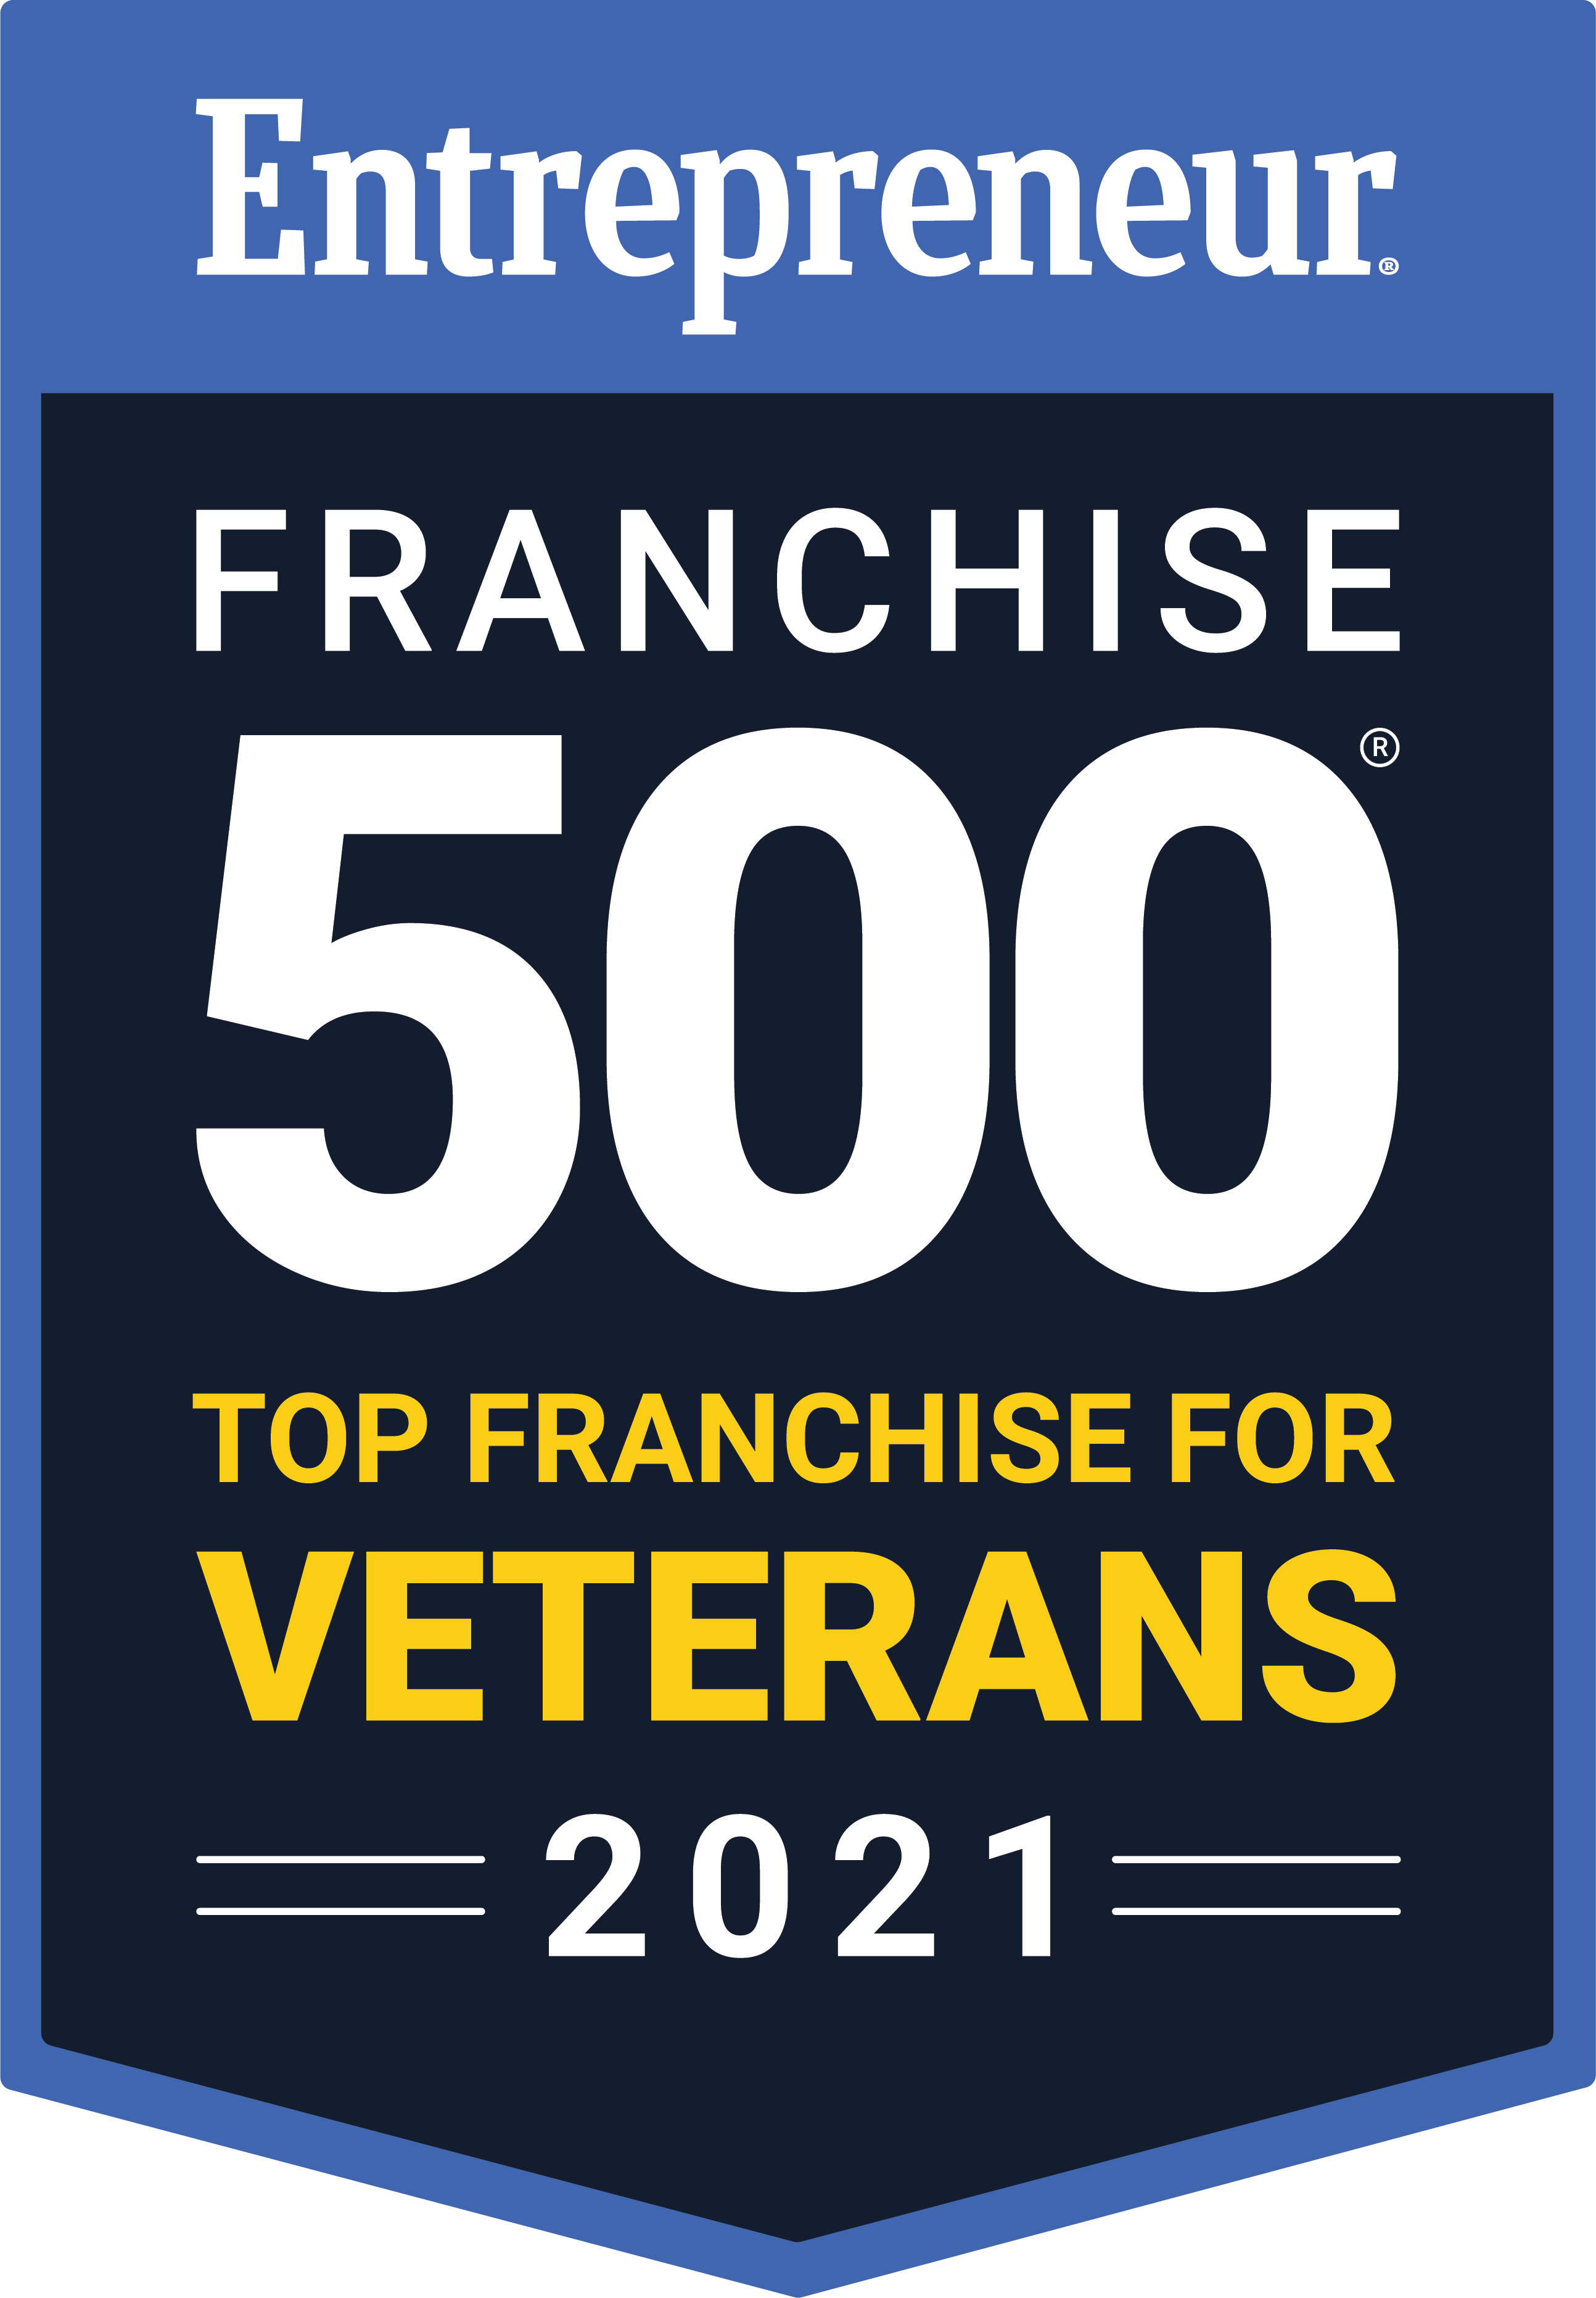 Entreprenuer Franchise 500 Top Franchise for Veterans -2021